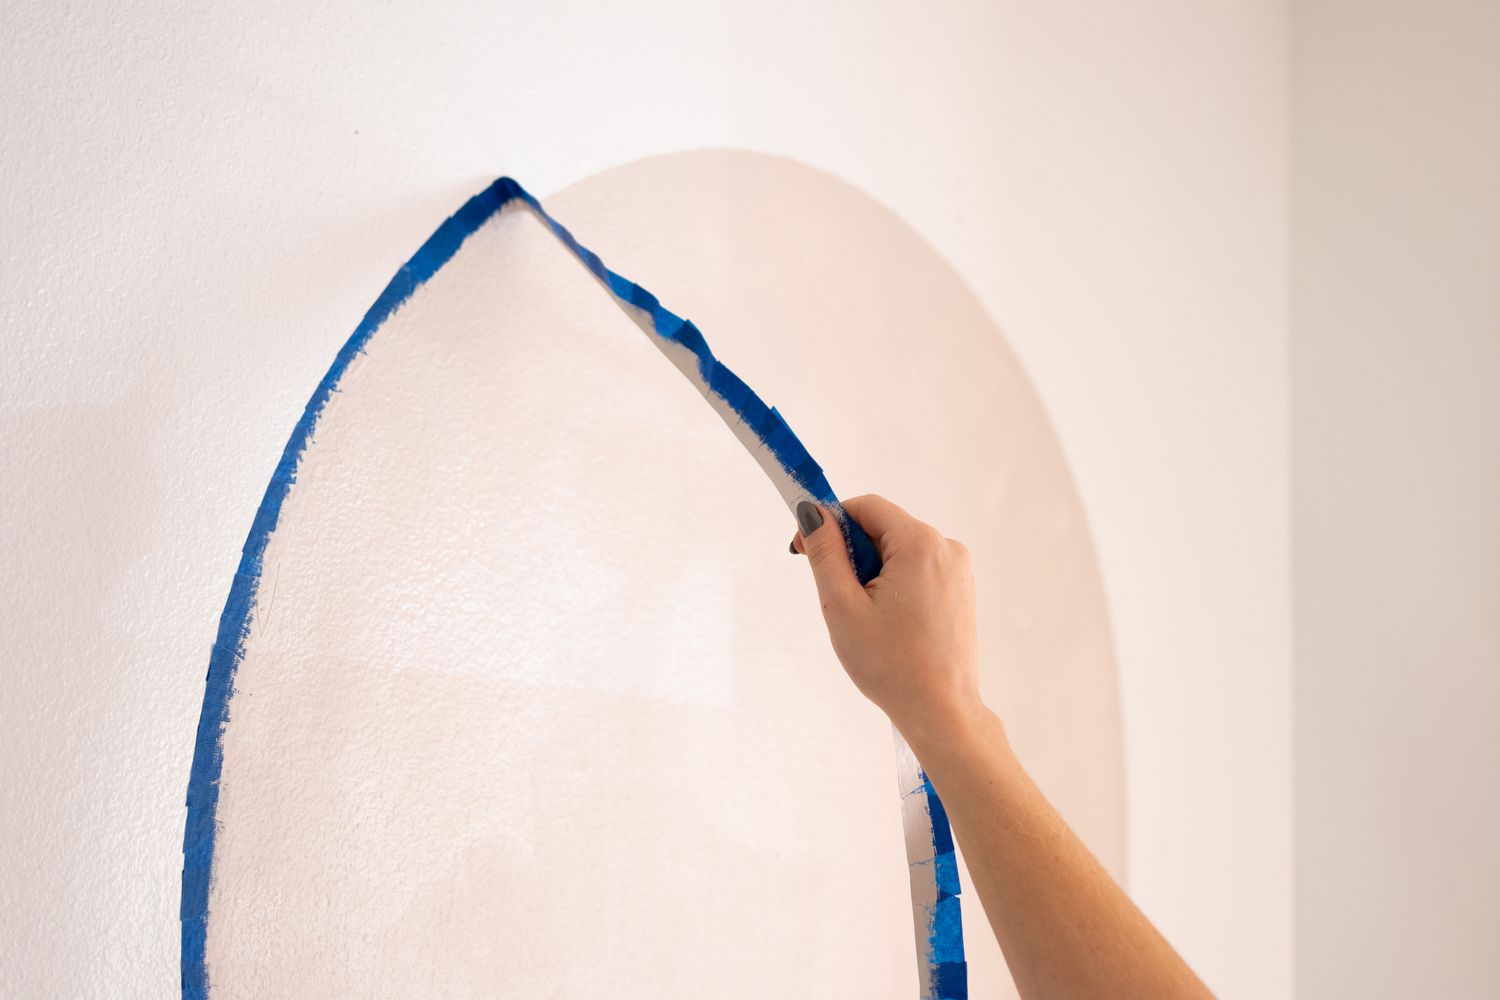 Malerband von der Wand entfernt, um den selbstgemalten Bogen freizulegen